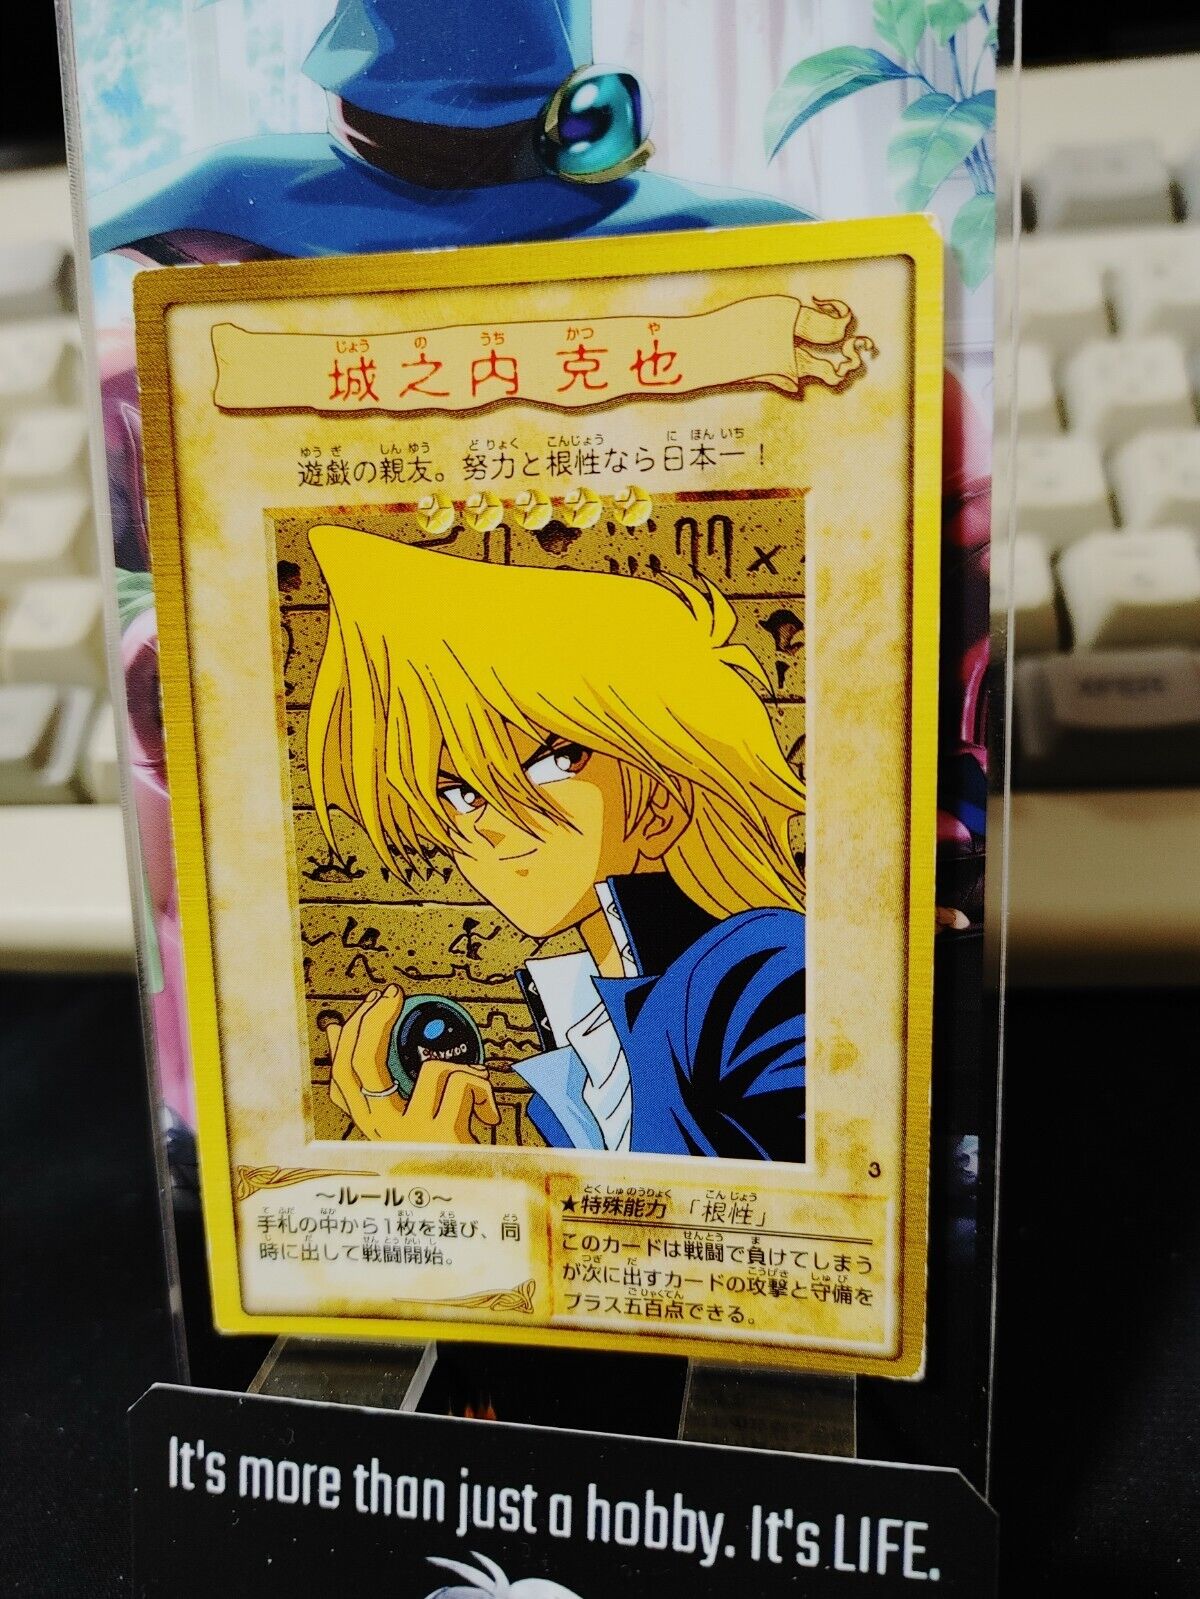 Yu-Gi-Oh Bandai Joey Wheeler Carddass Card #3 Japanese Retro Japan Rare Item